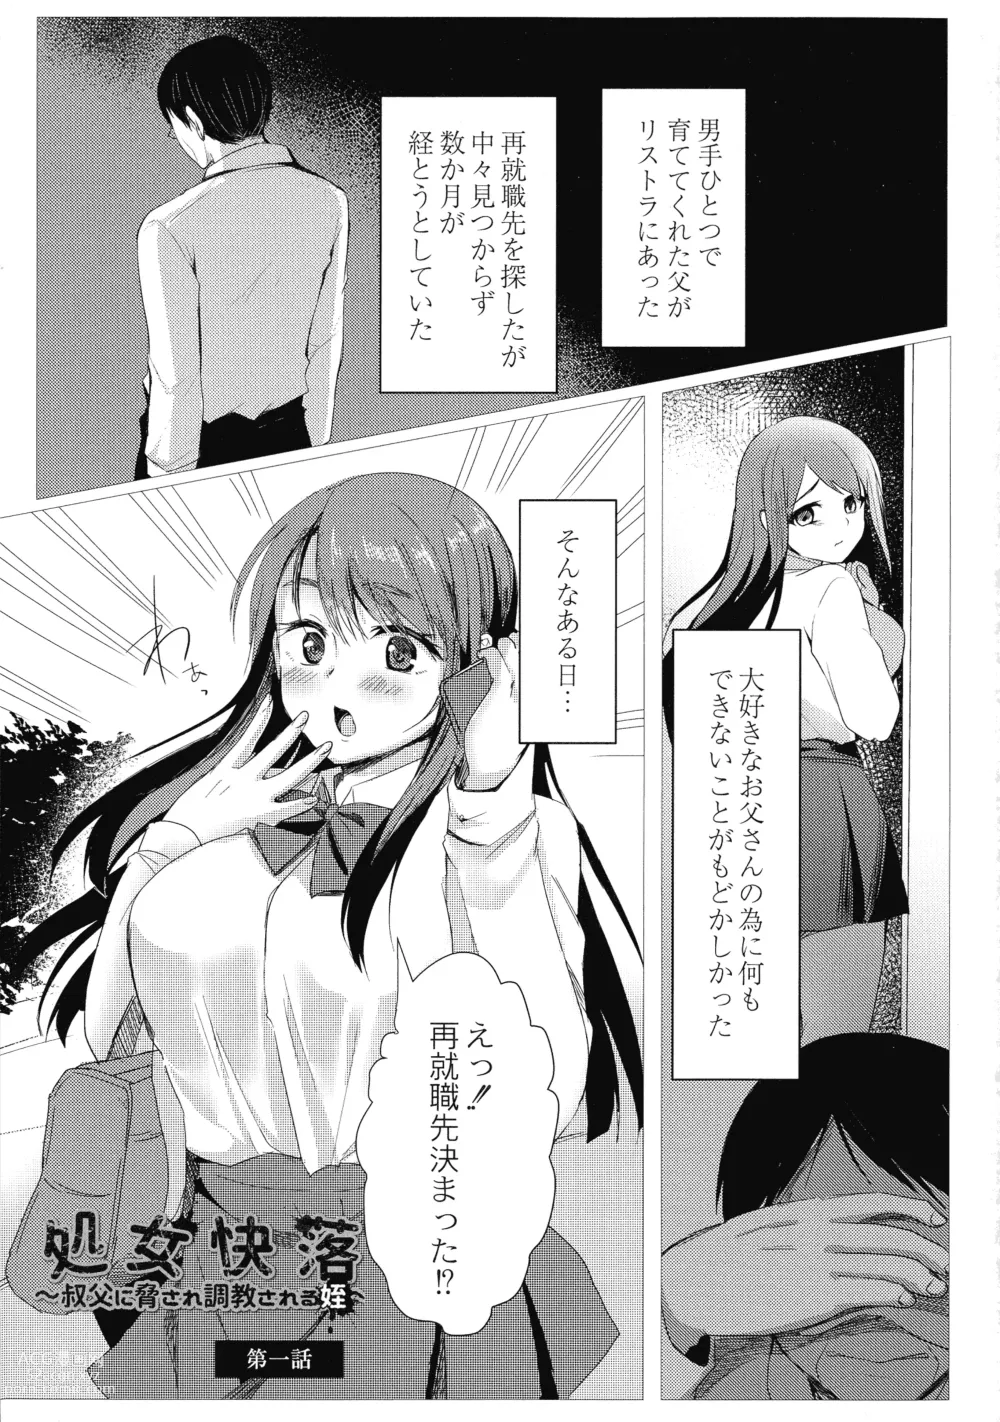 Page 5 of manga Mesuochi.